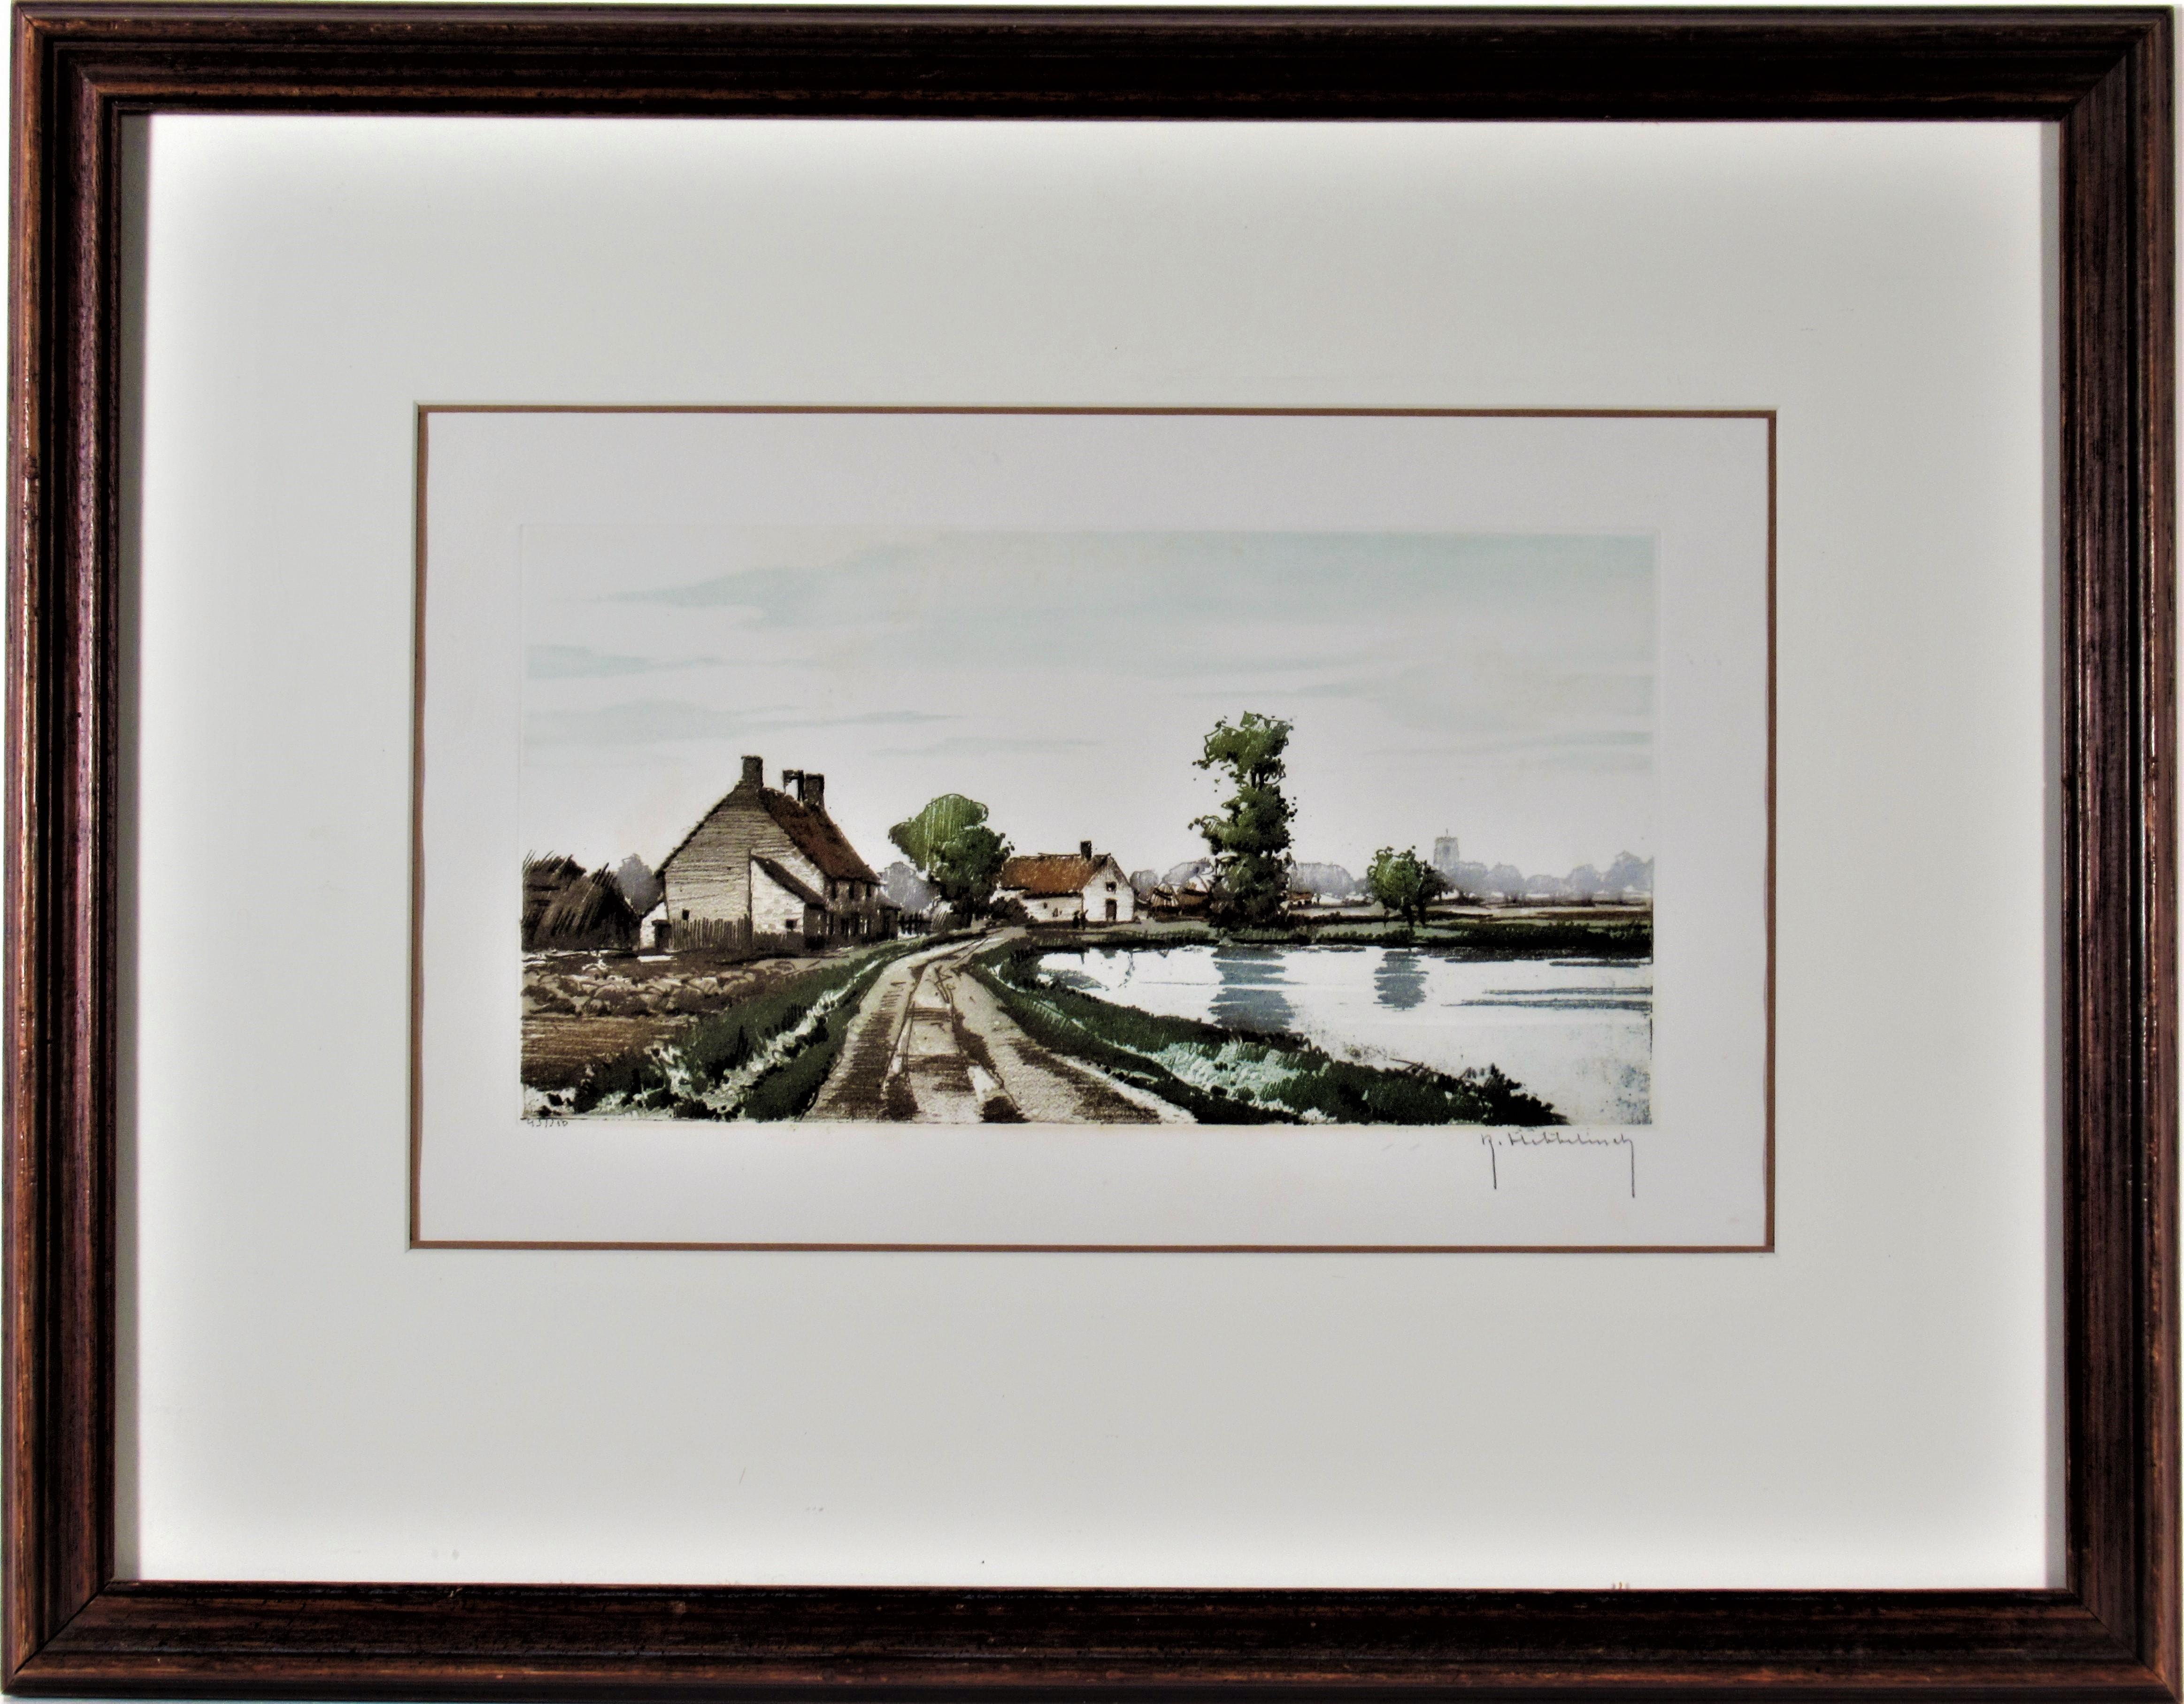 Roger Hebbelinck Figurative Print - Landscape with Pond